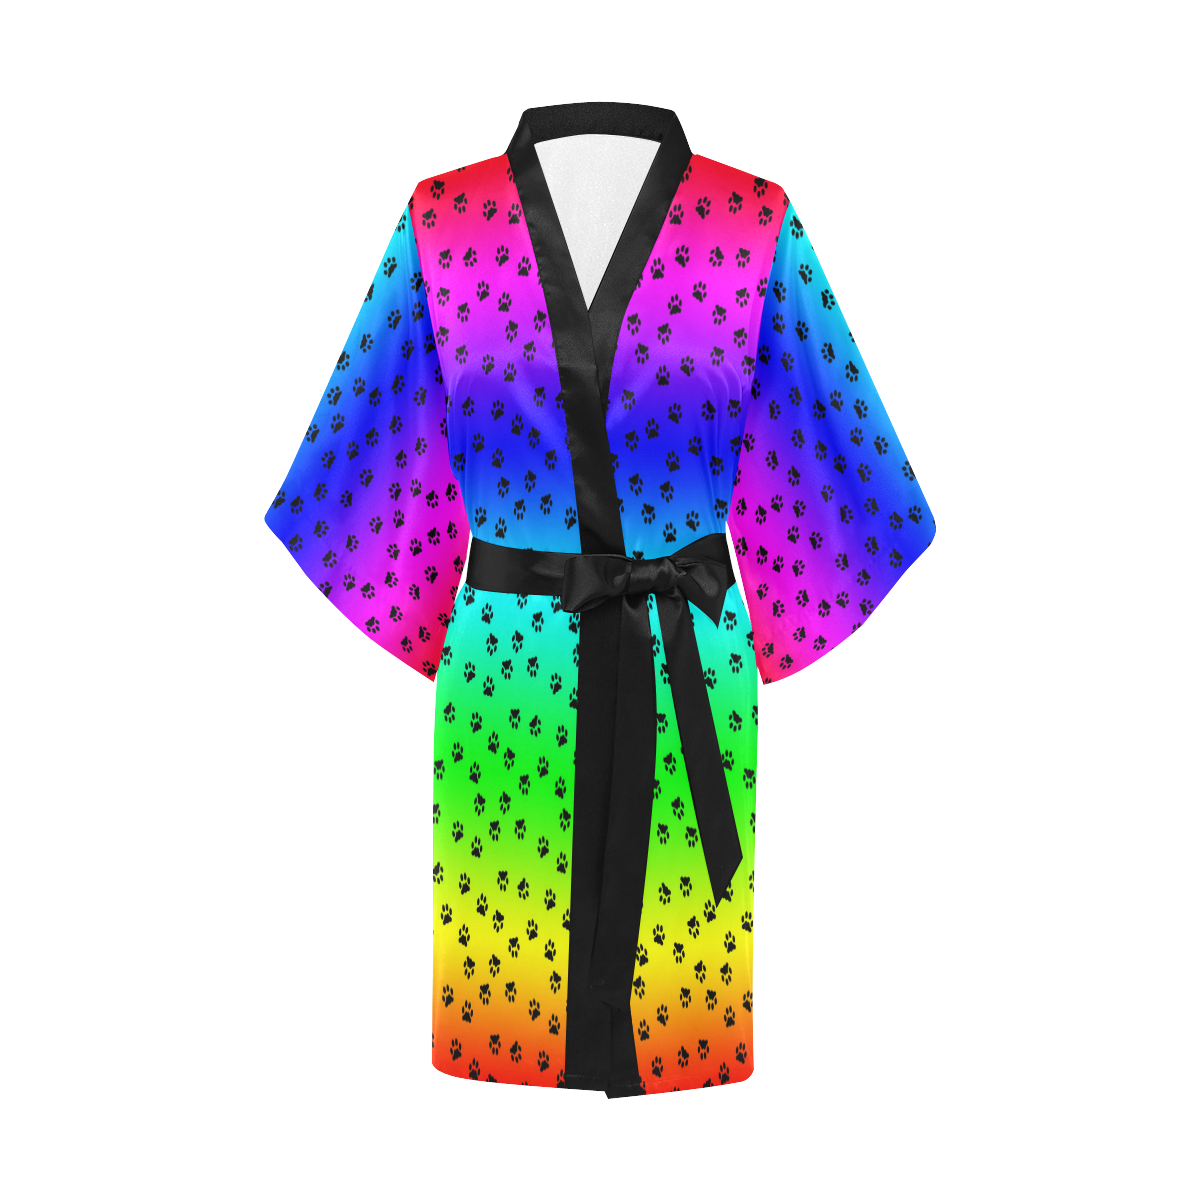 rainbow with black paws Kimono Robe